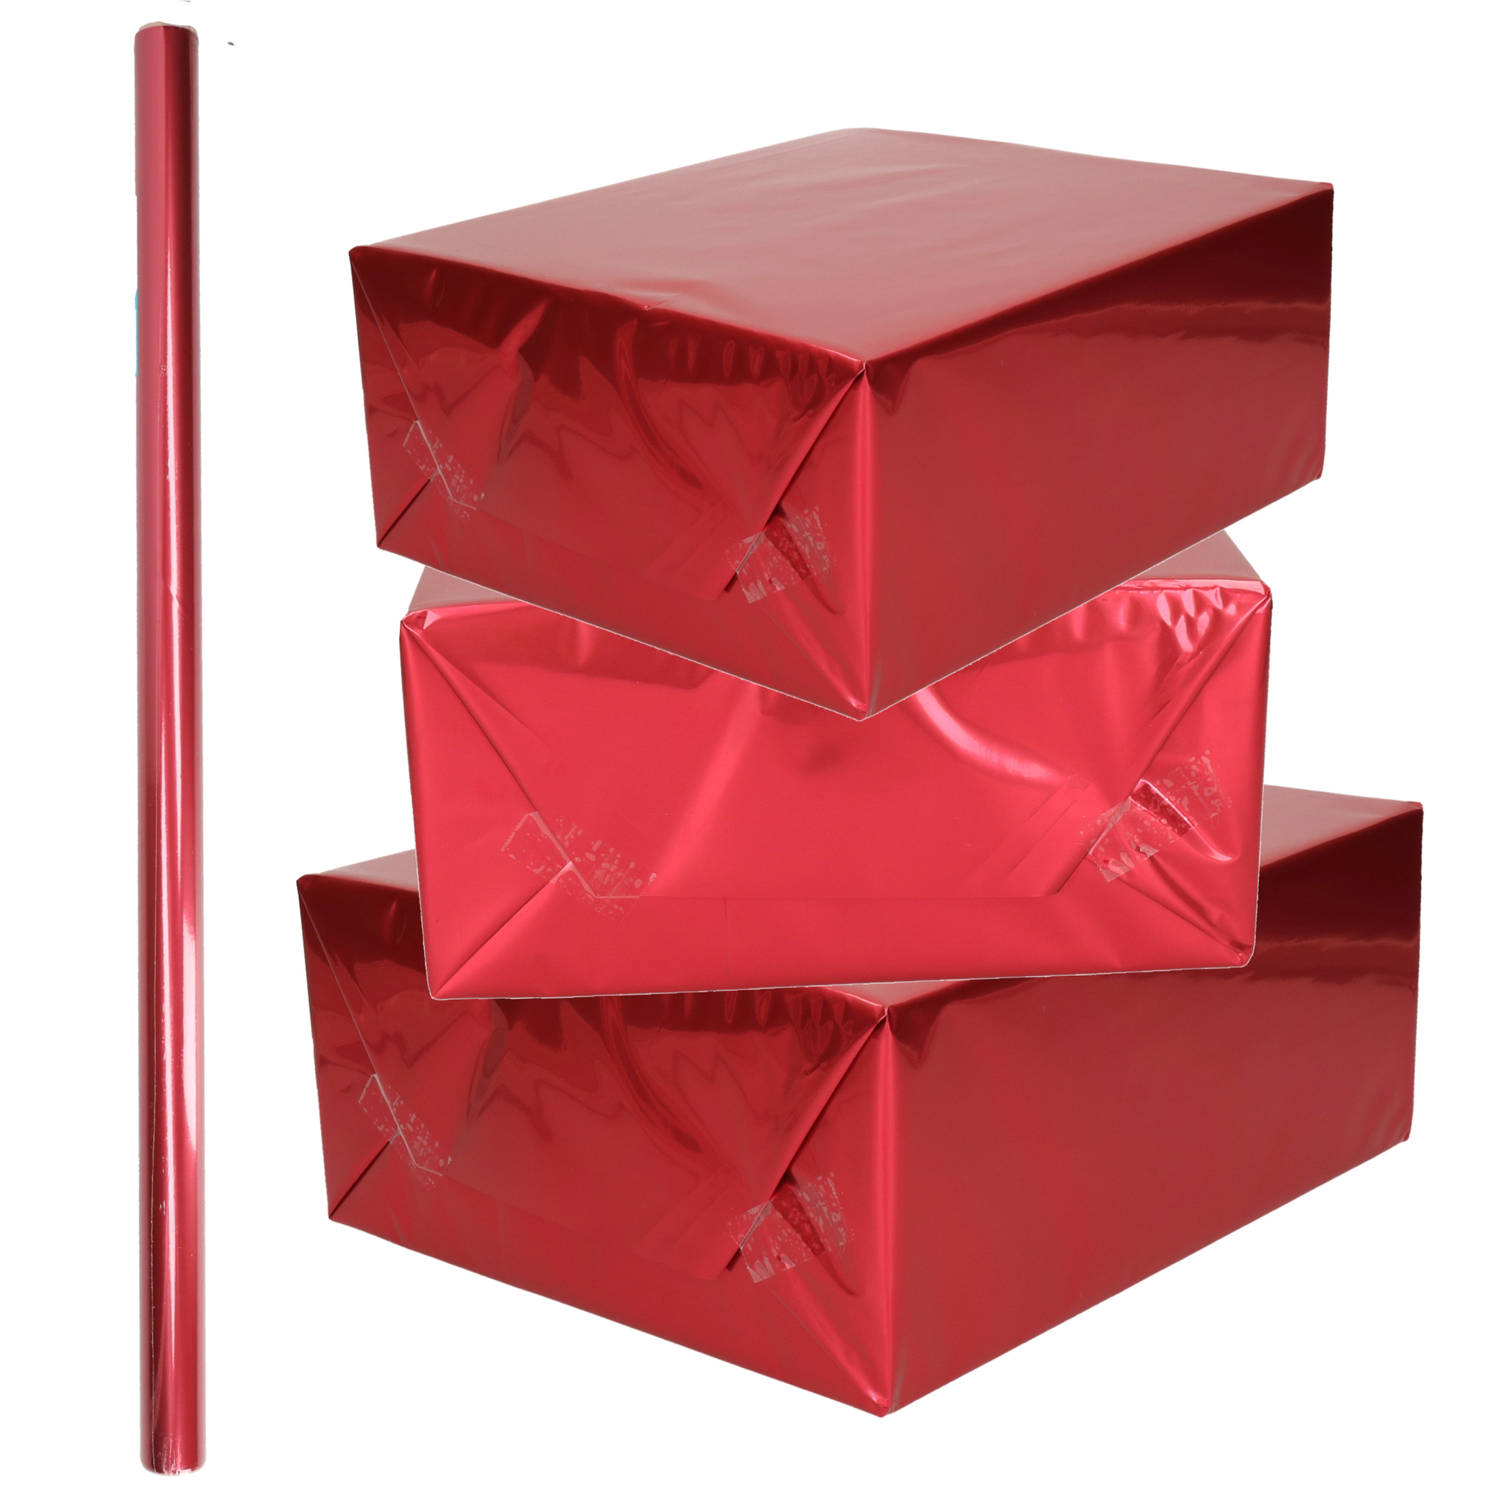 1x Rollen inpakpapier / cadeaufolie metallic rood 200 x 70 cm - kadofolie / cadeaupapier